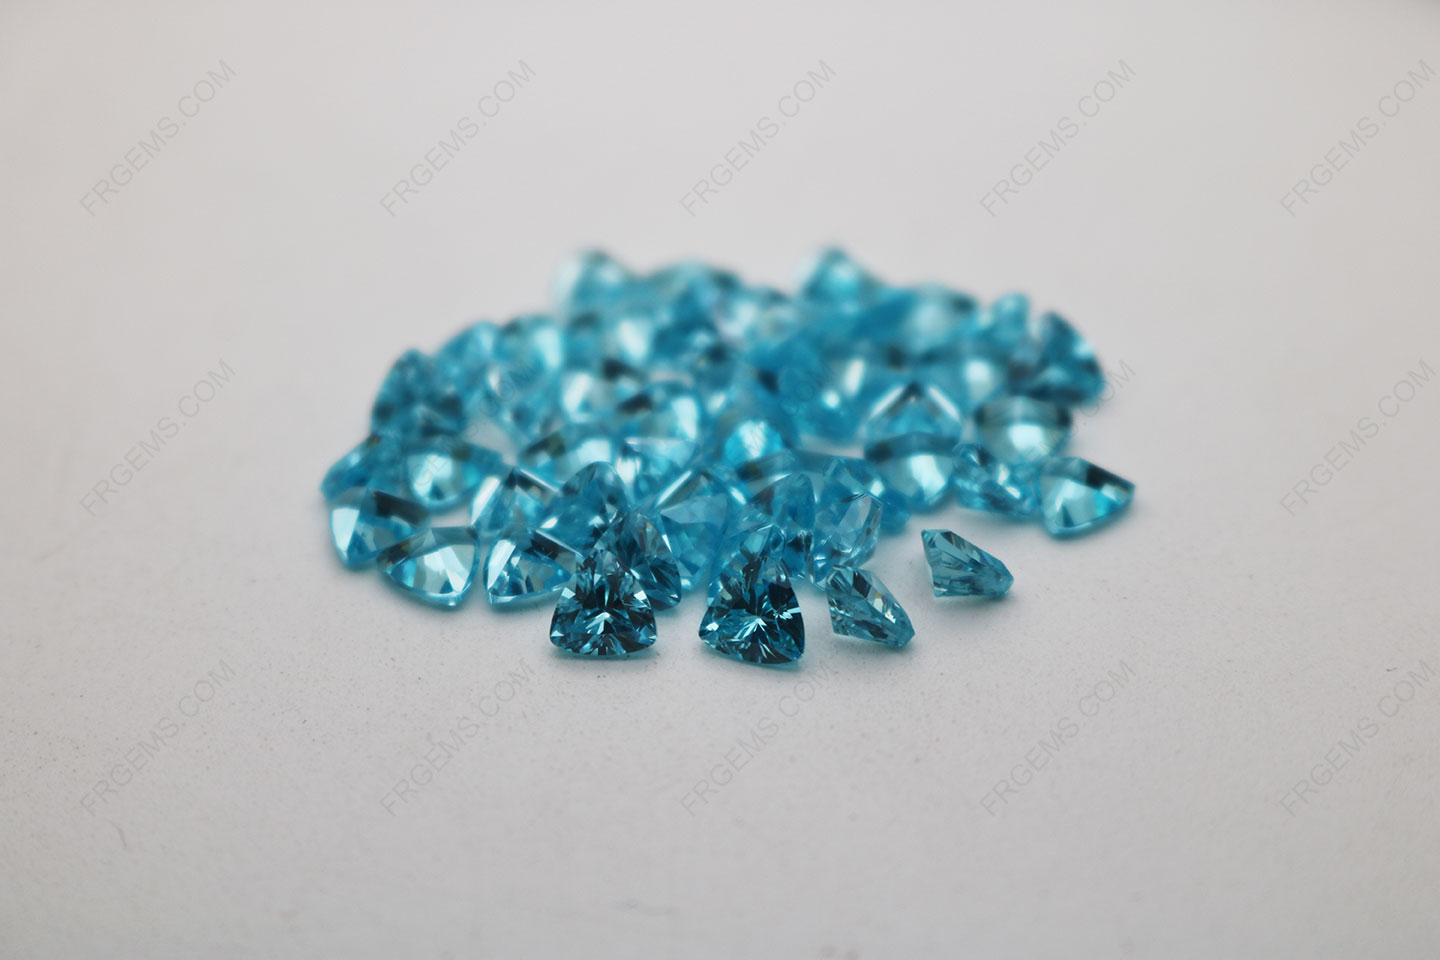 Cubic_Zirconia_Aquamarine_Trillion_Shape_Diamond_faceted_cut_5x5mm_stones_IMG_4891